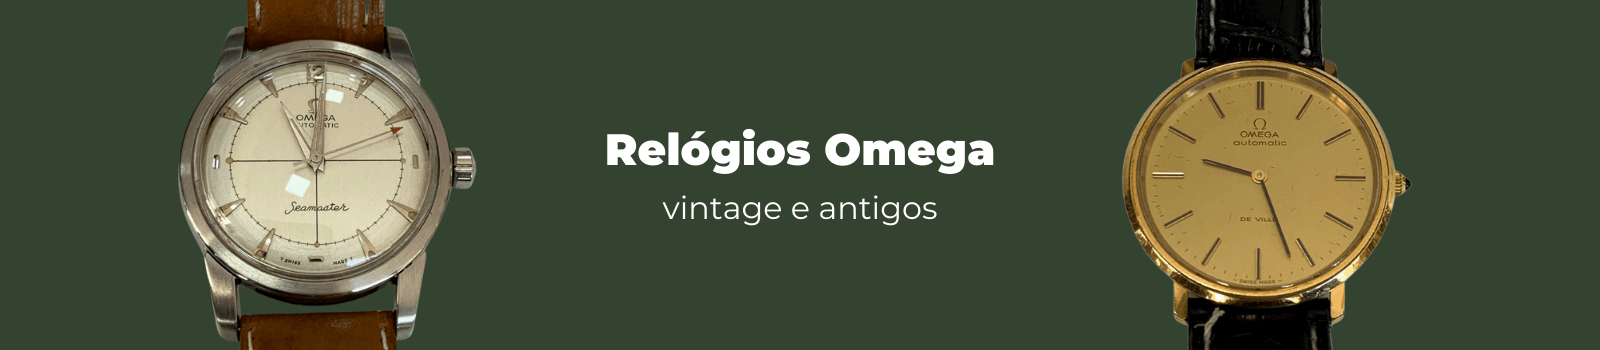 relógios omega vintage antigos